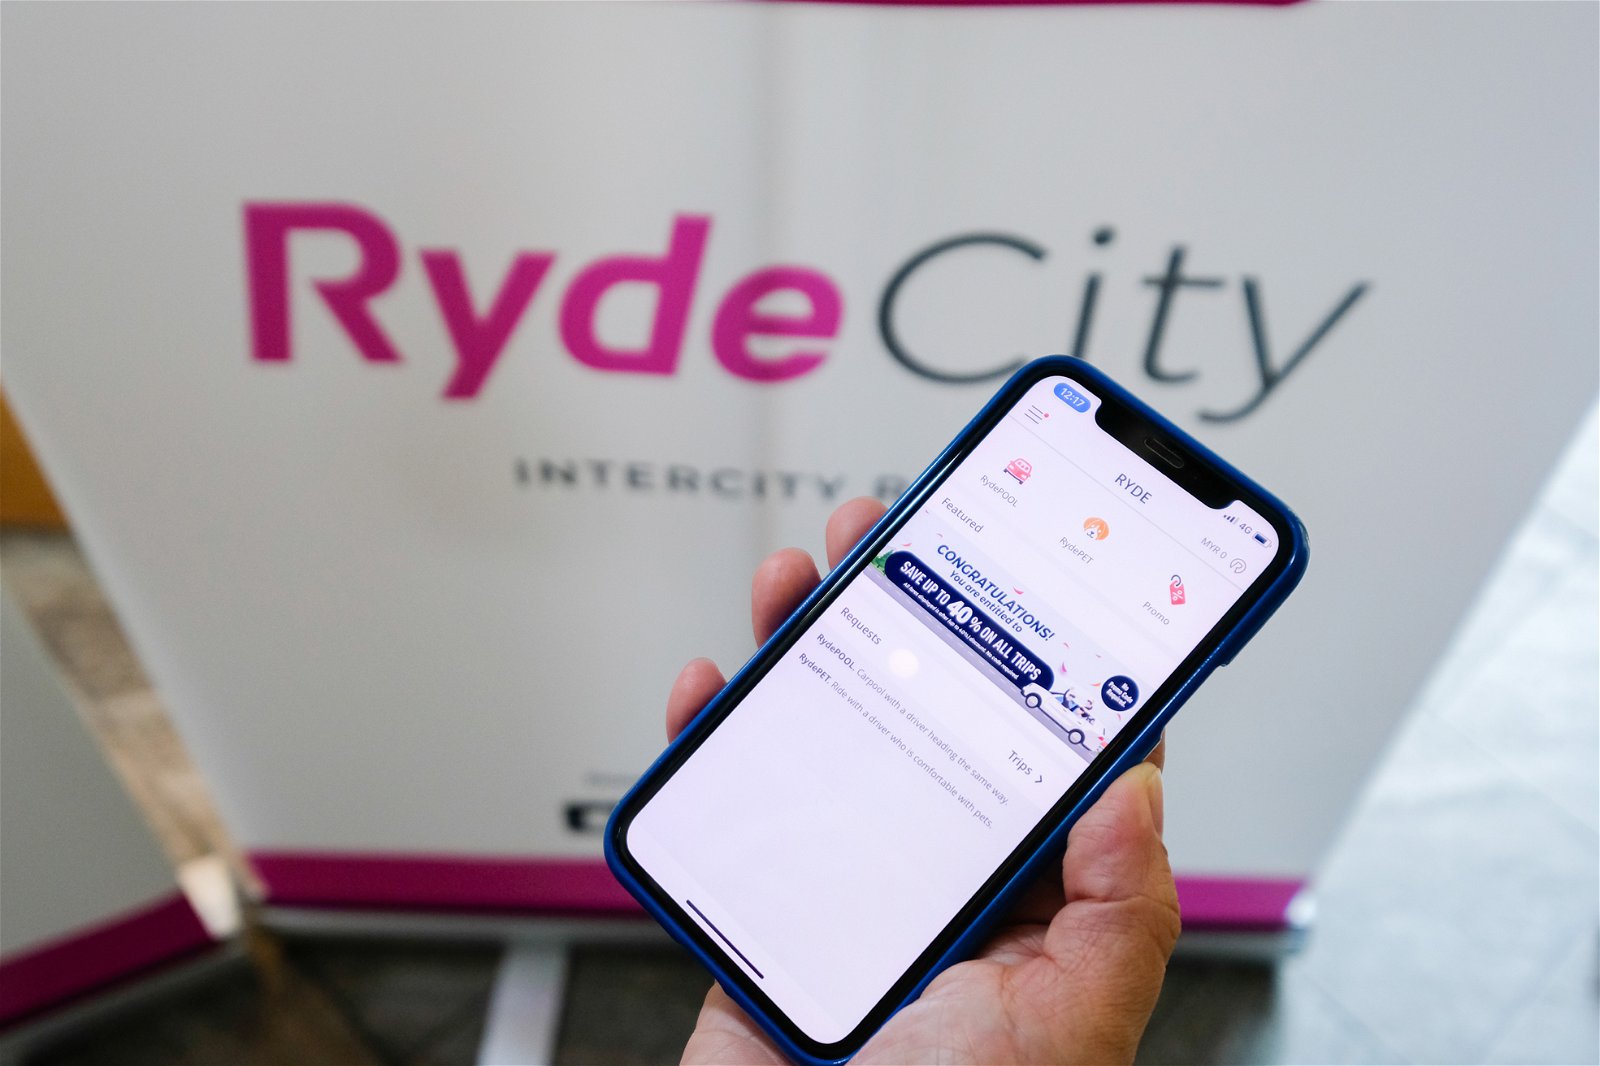 在推介礼上，邹俊明宣布即将推出RydeCity，即跨州共车服务，但对于确切发布时间，他仍没有一个肯定的说法。